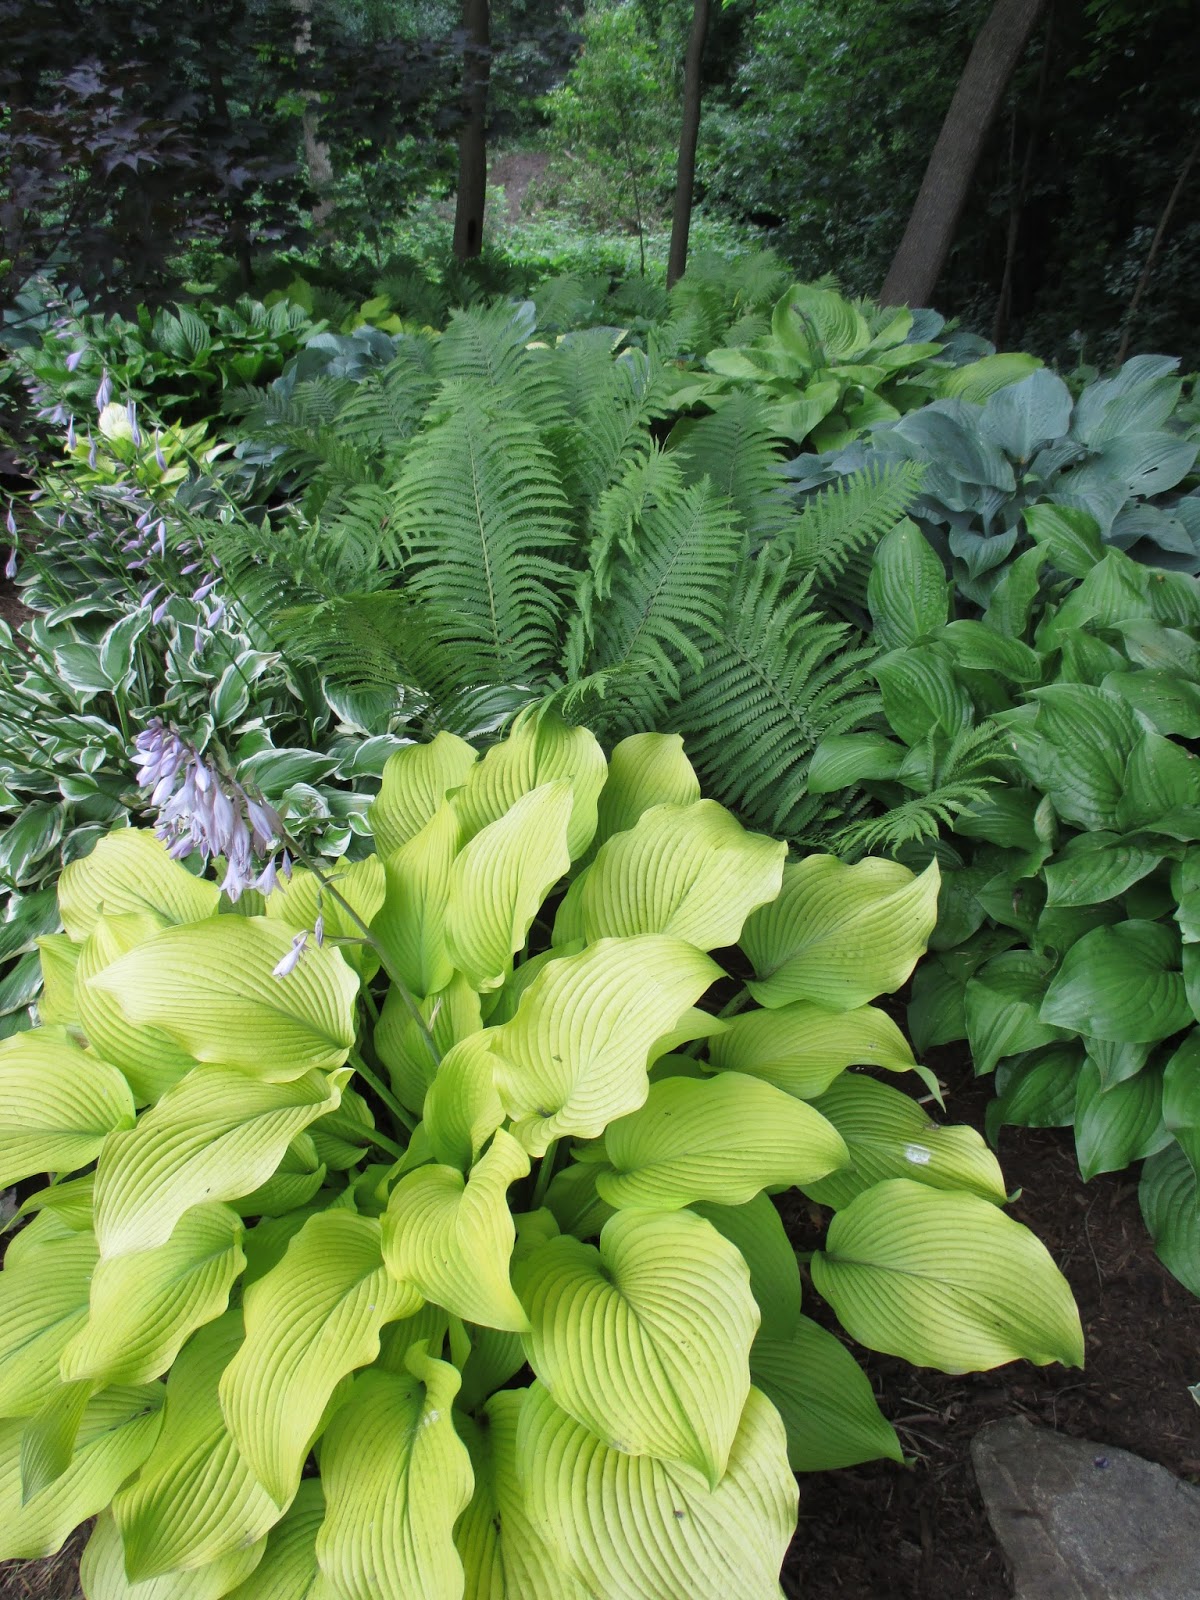 Rotary Botanical Gardens - Hort Blog: Superb Home Garden Tour